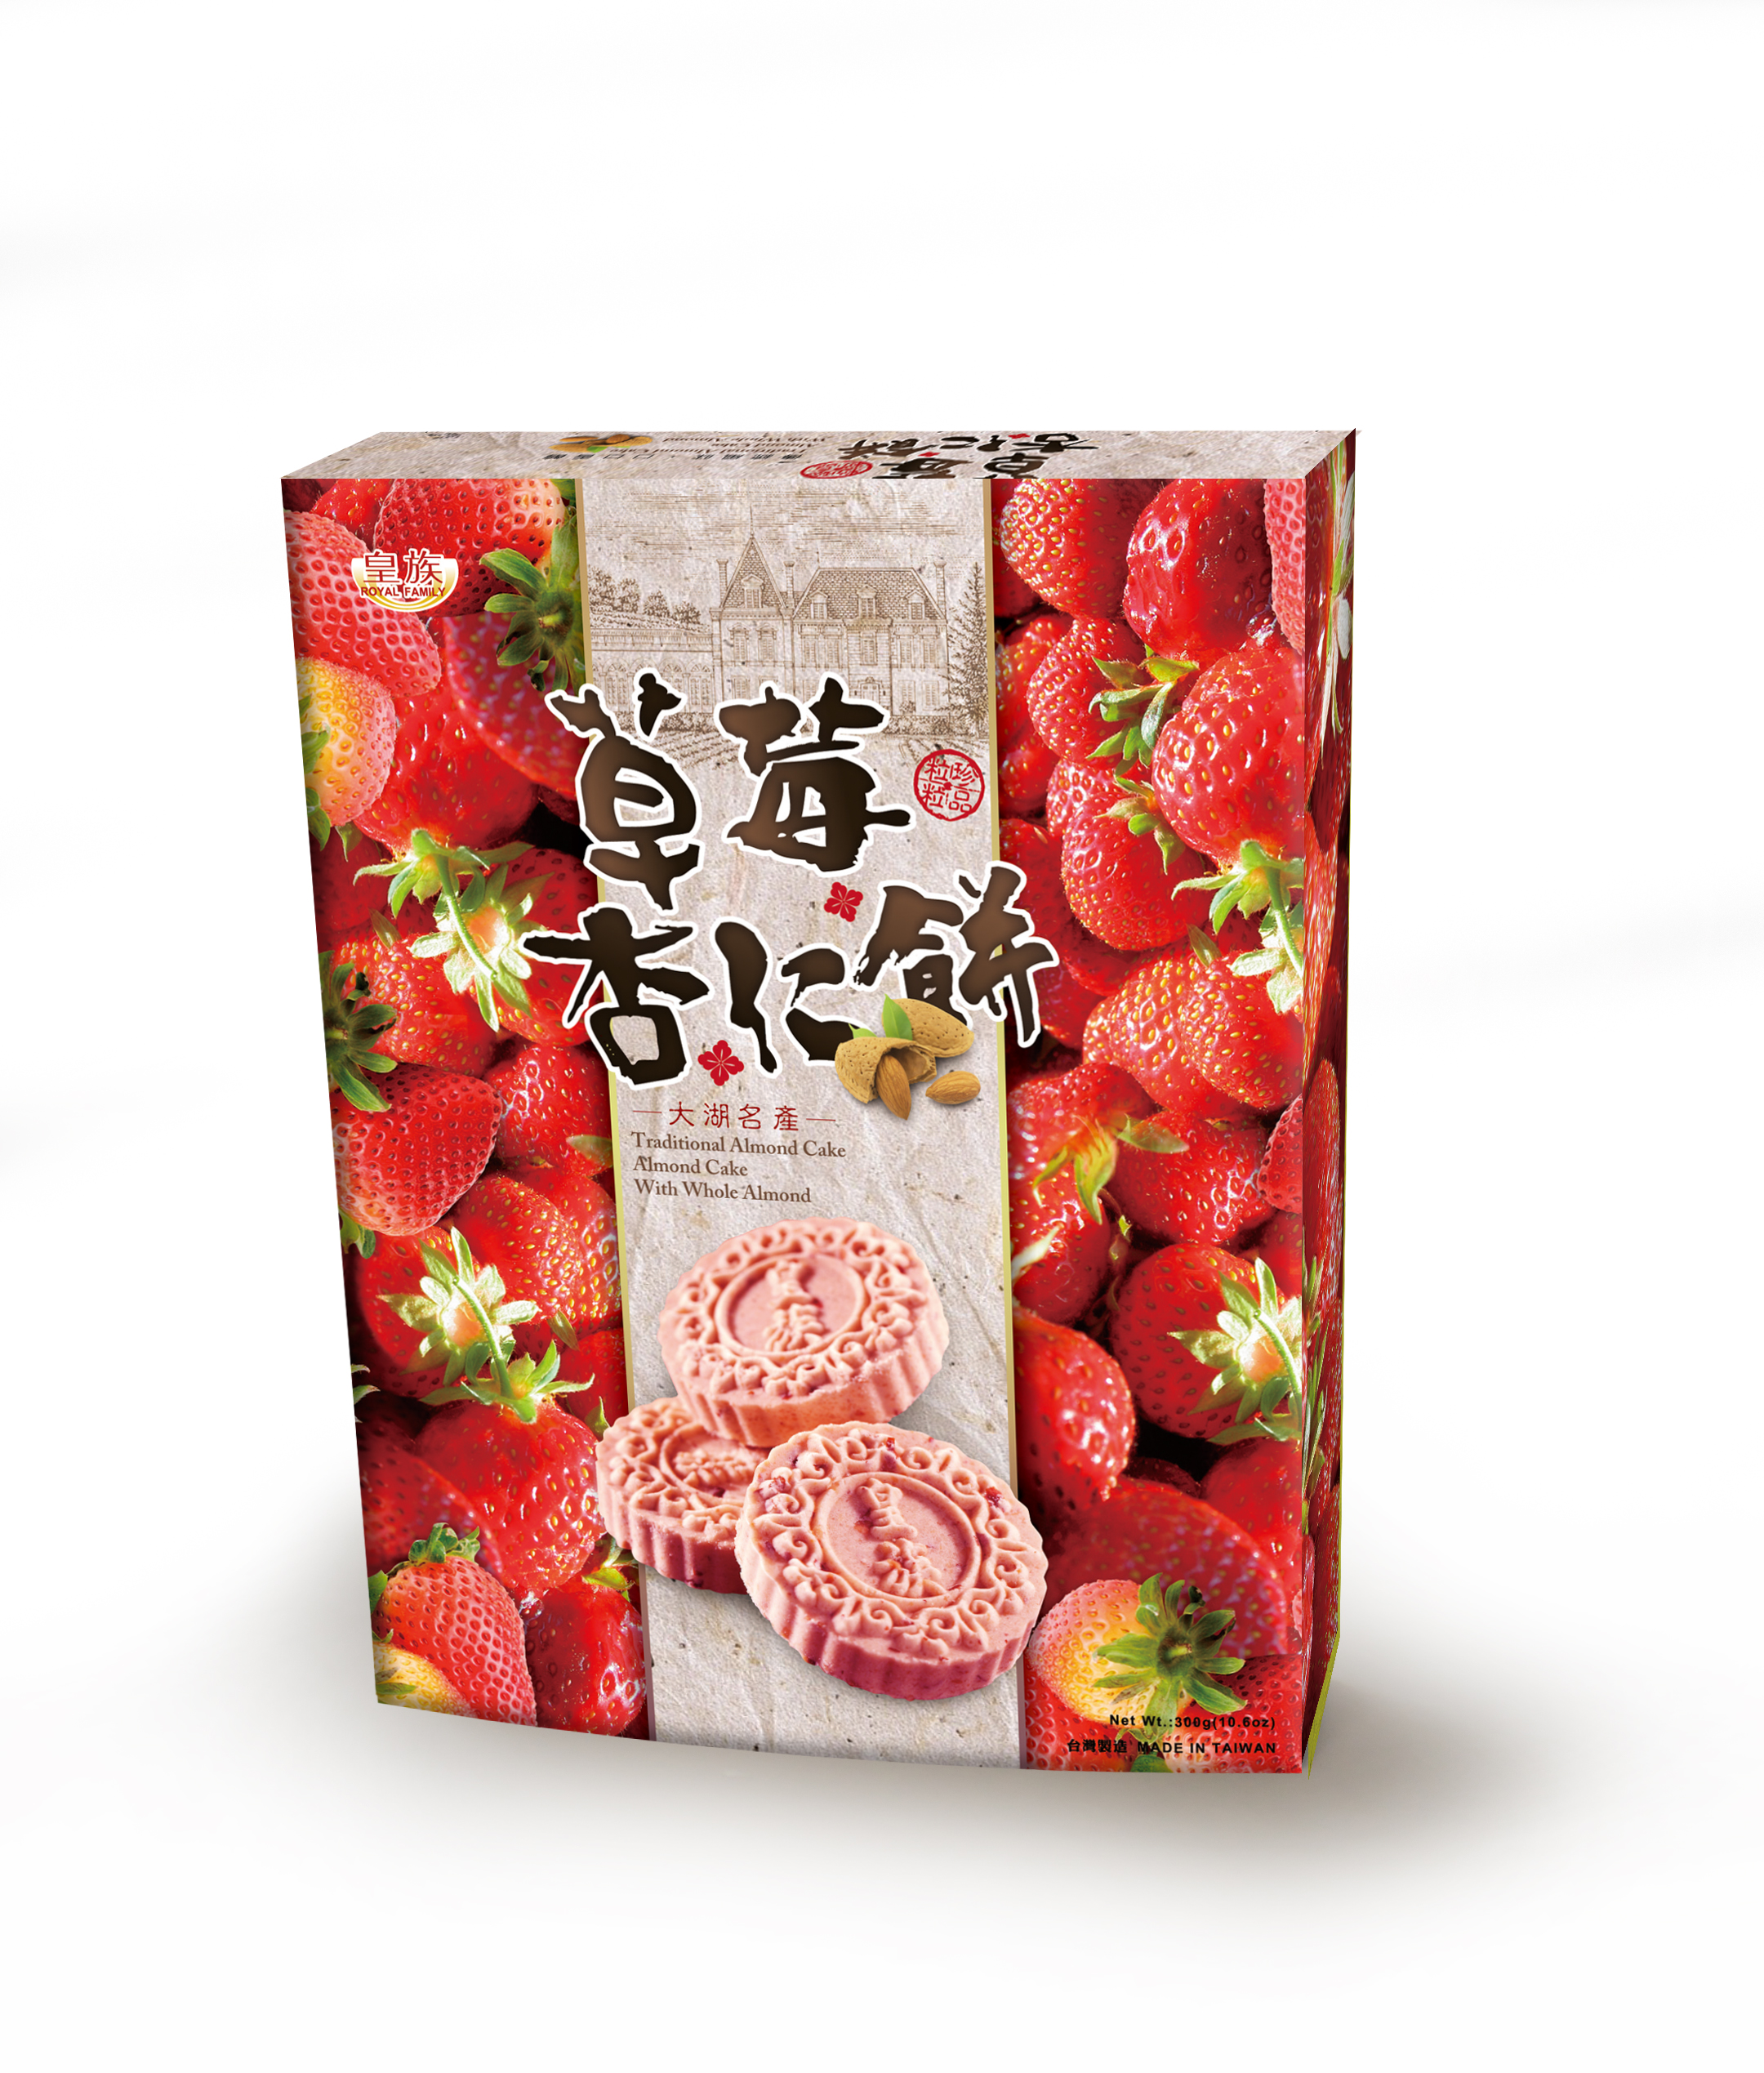 可口酥饼系列-杏仁饼-草莓(300g)